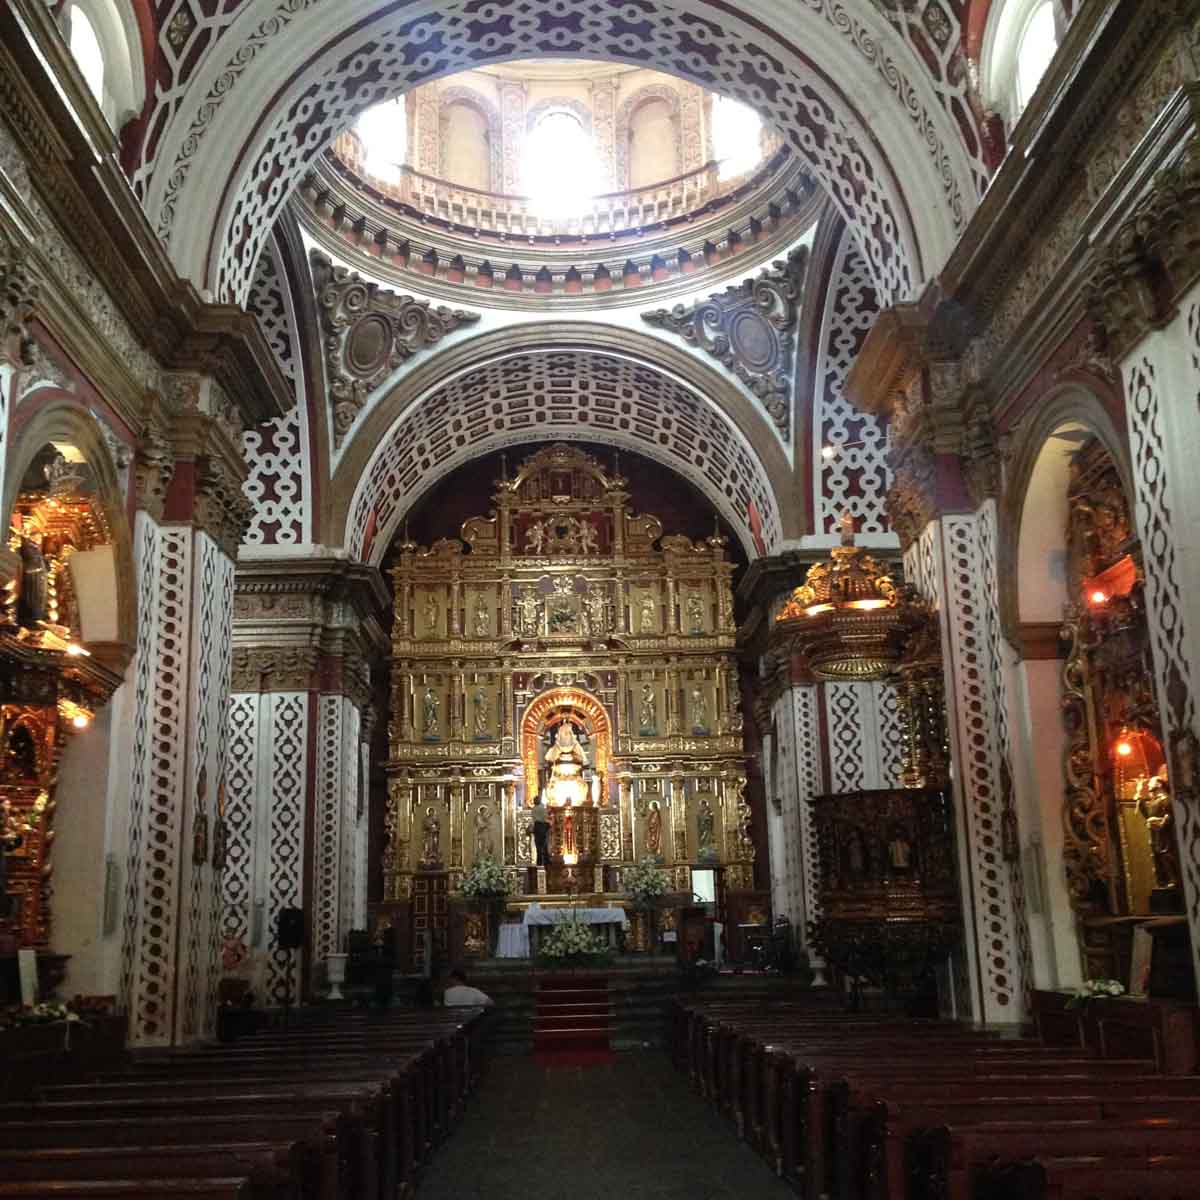 Guapulo in Quito, Ecuador, puriy, reiseblog